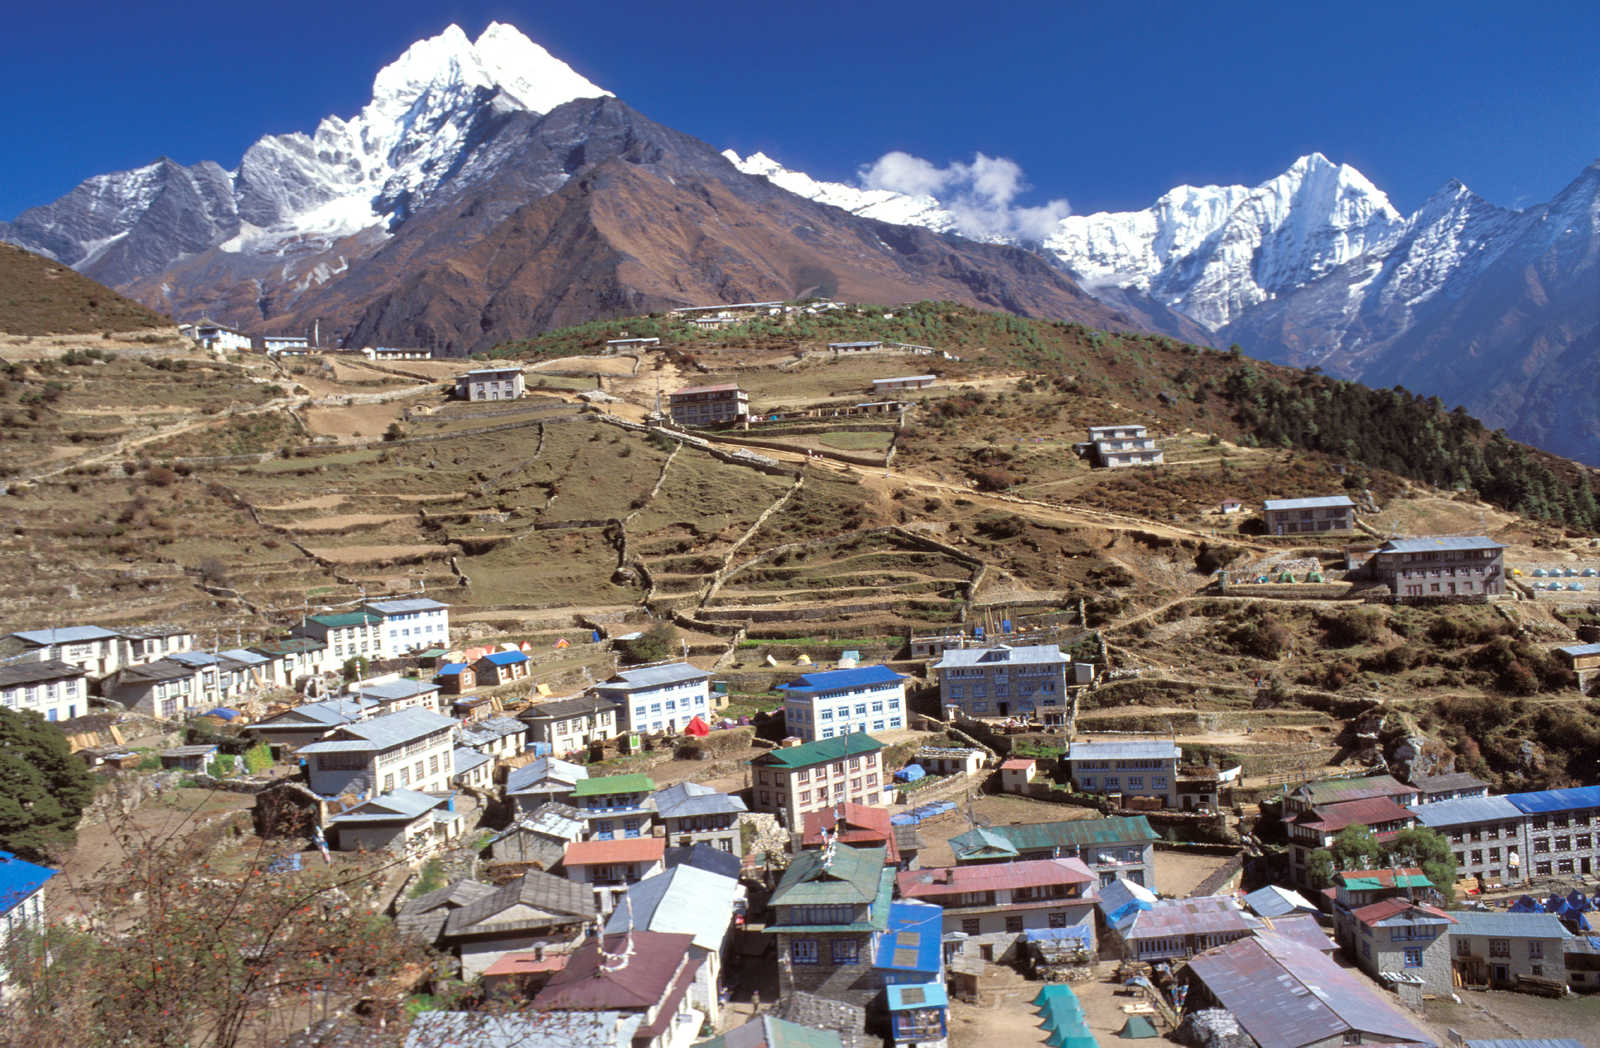 Image Kala Pattar et Camp de base de l'Everest